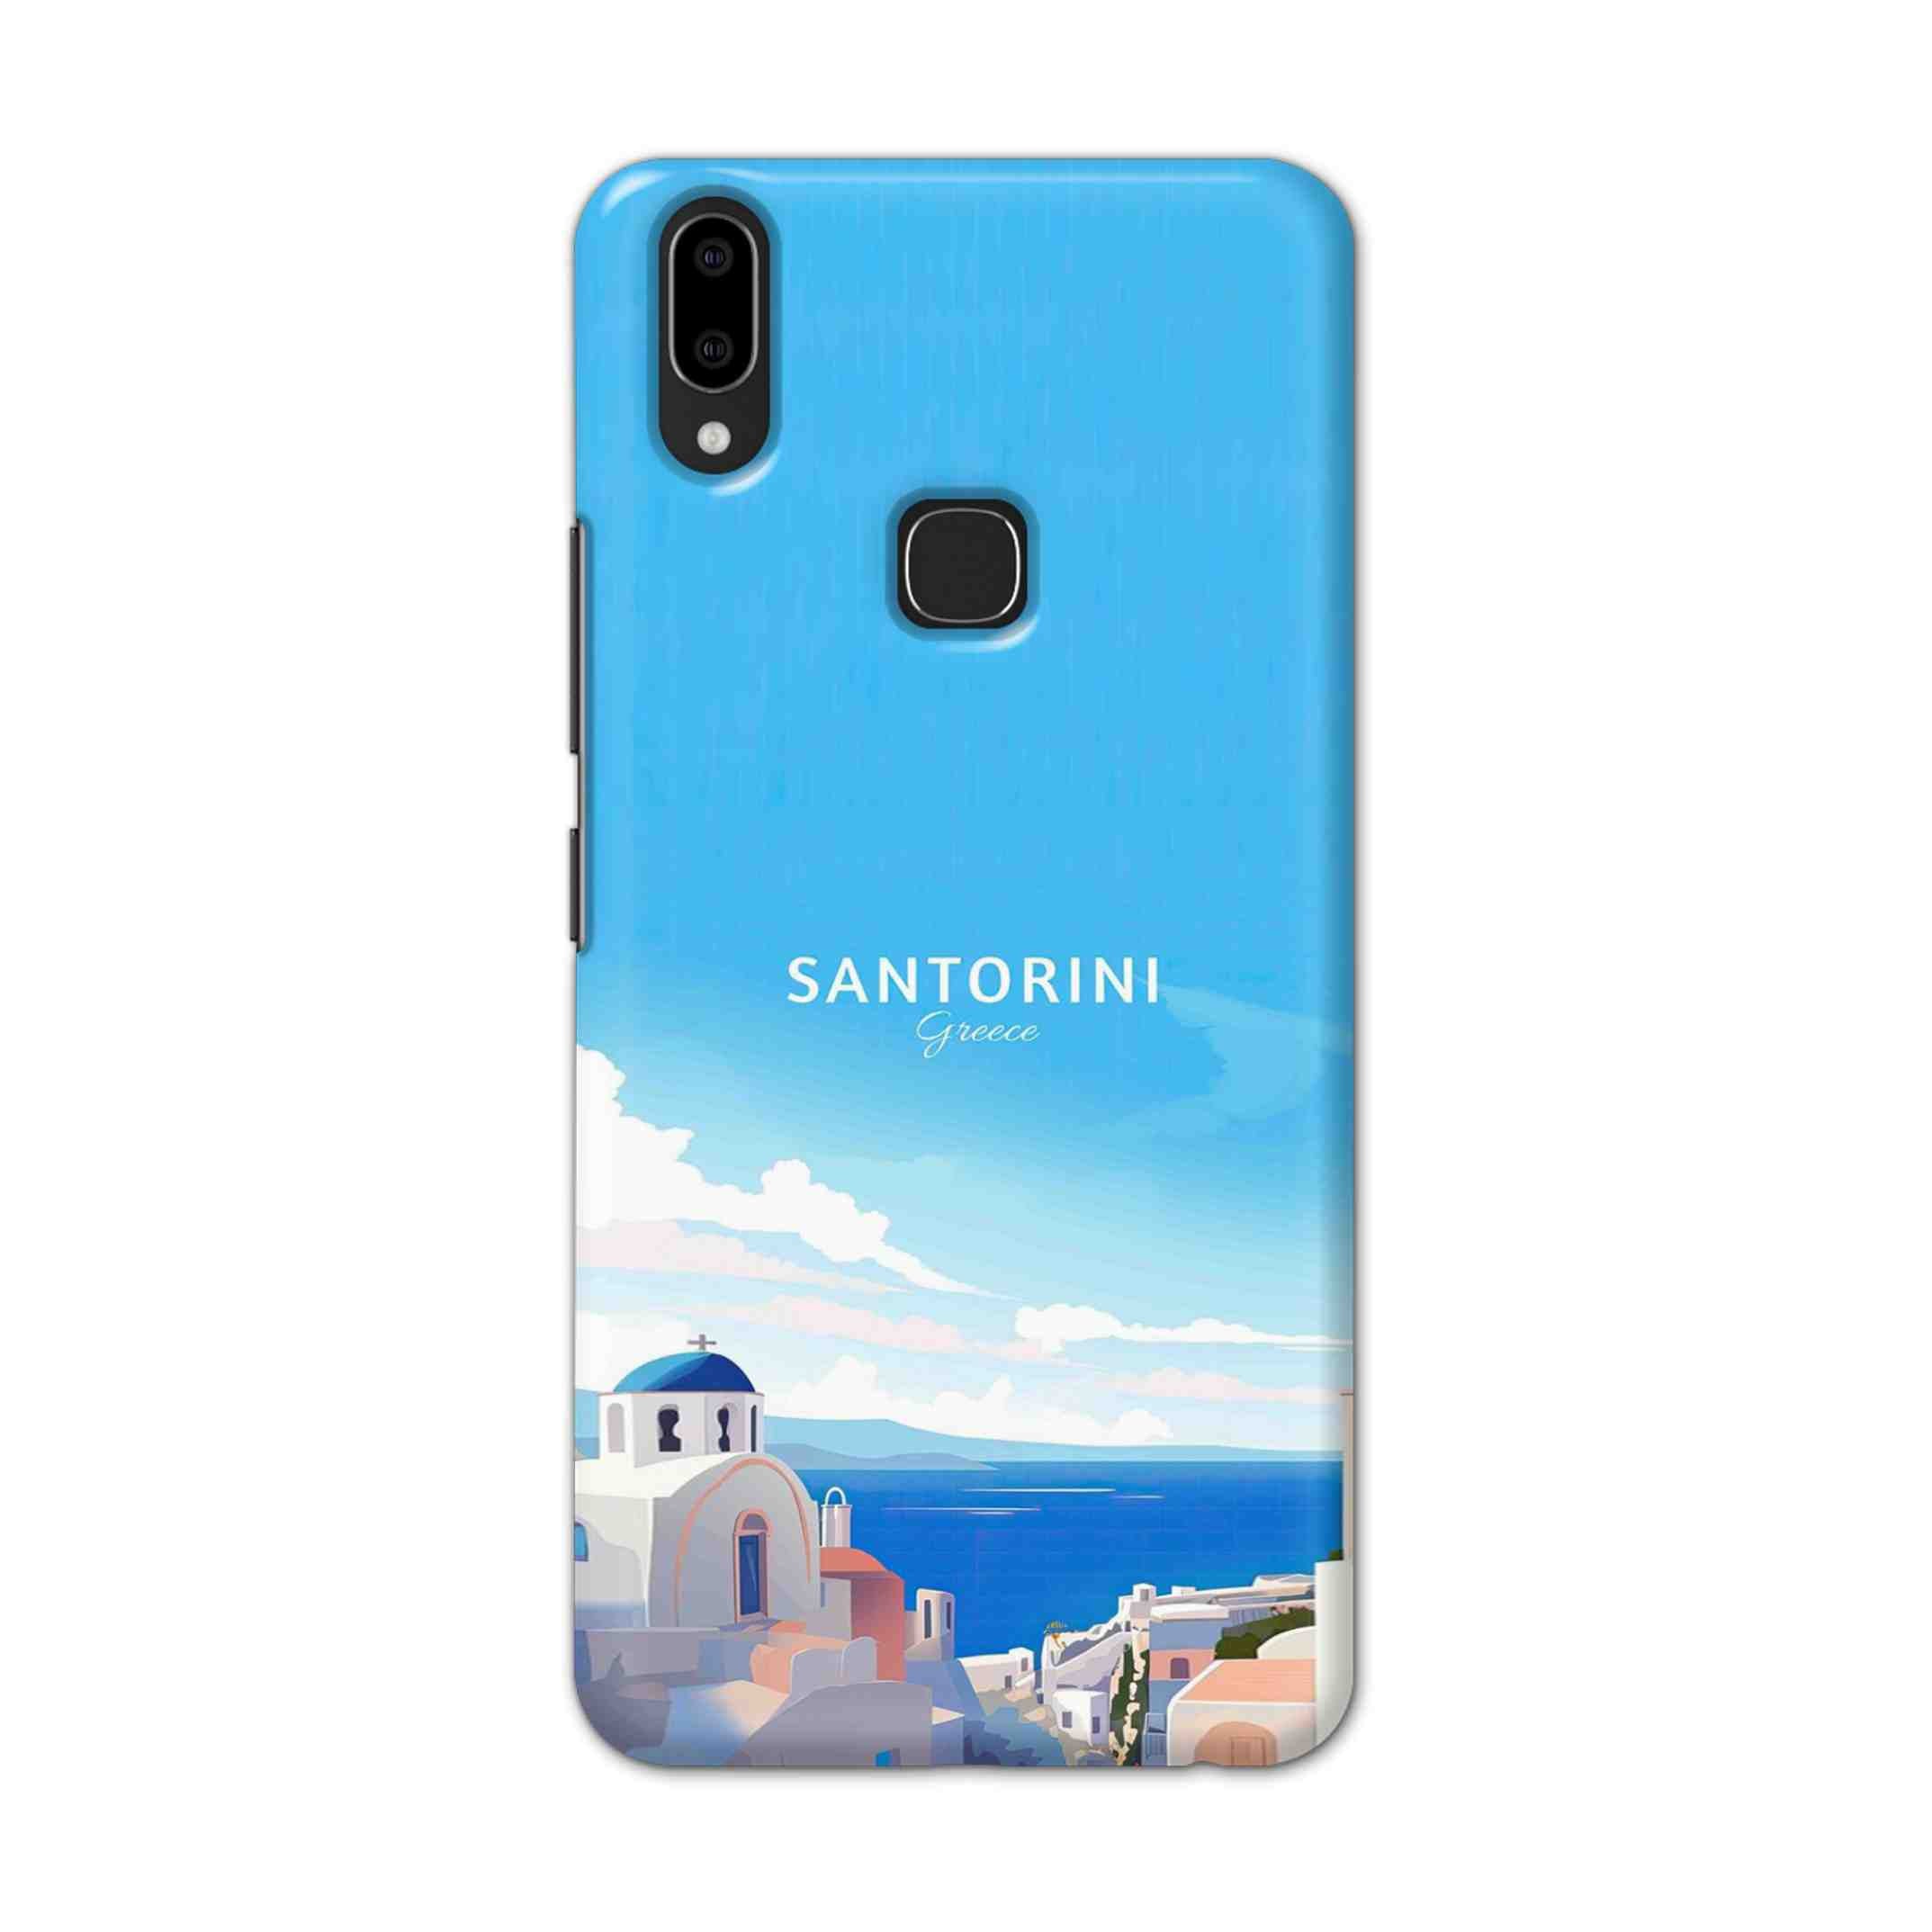 Buy Santorini Hard Back Mobile Phone Case Cover For Vivo V9 / V9 Youth Online